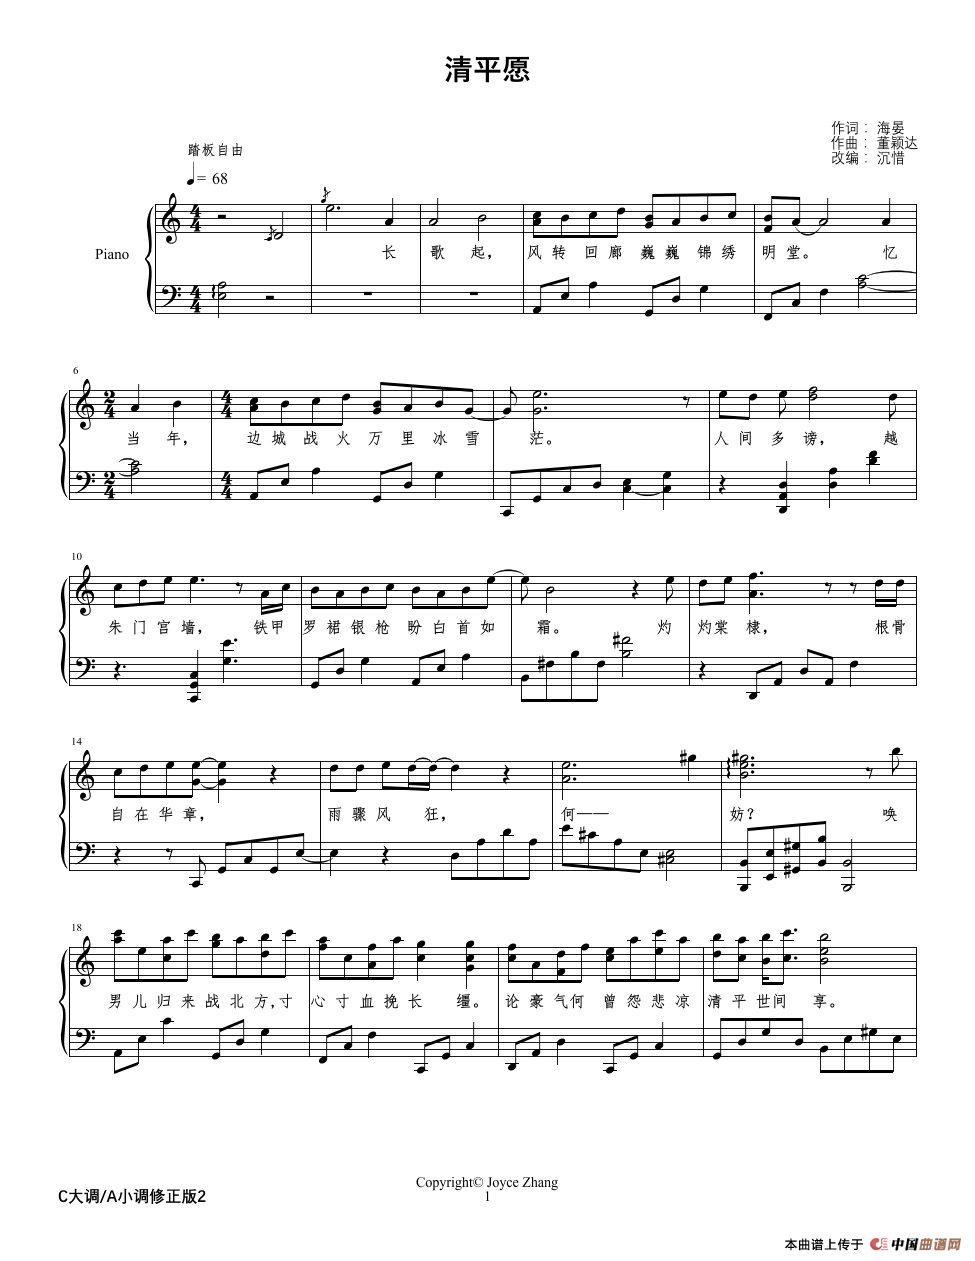 《清平愿》钢琴曲谱图分享